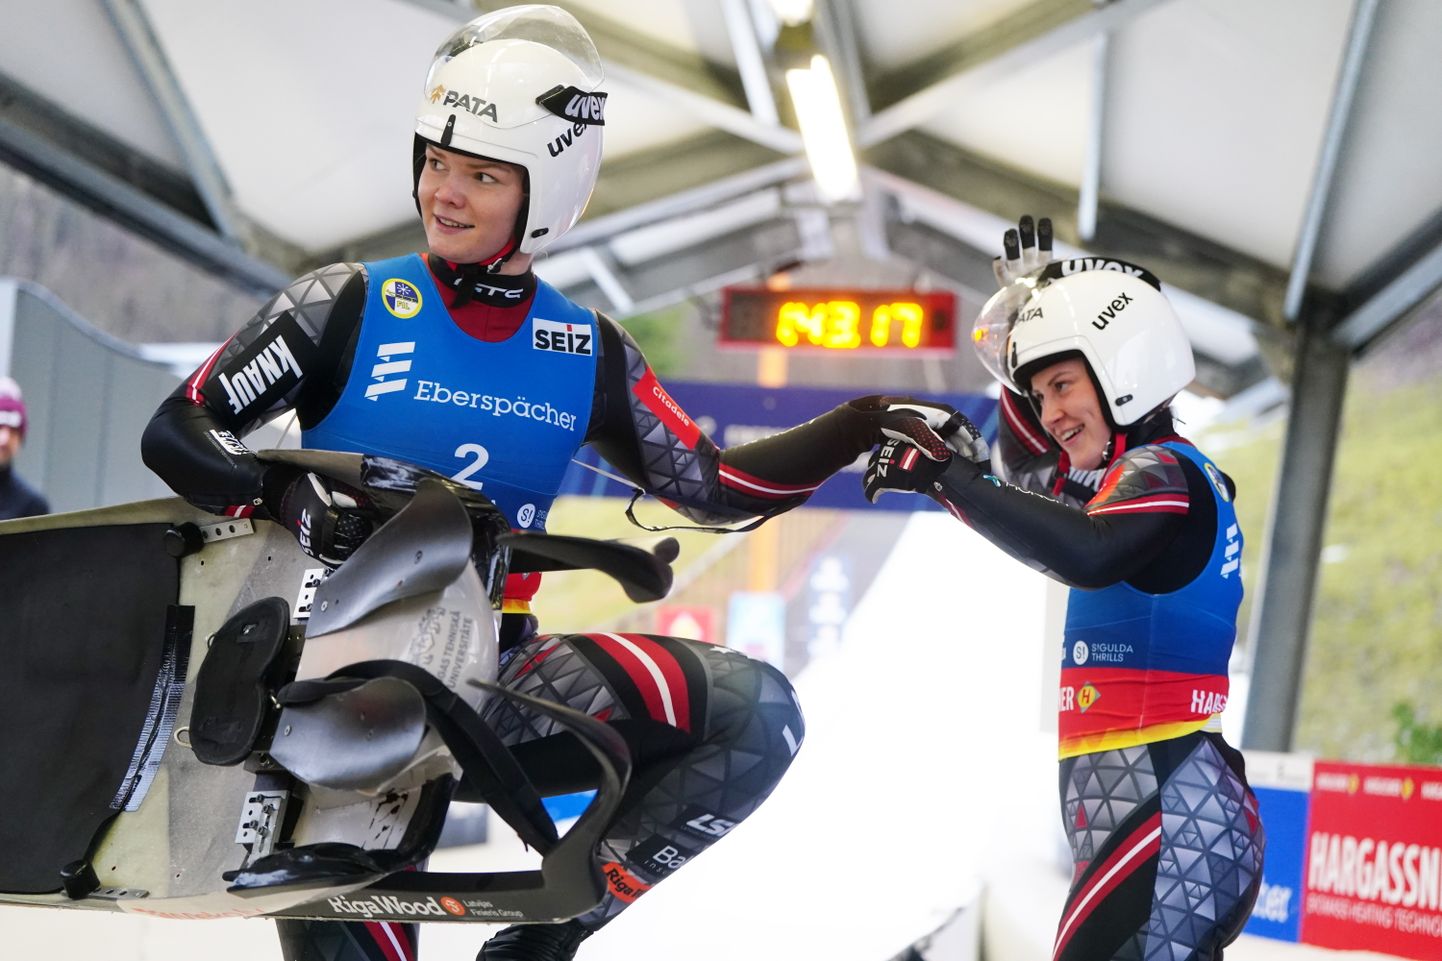 "Eberspracher" Pasaules kausa astotais posms kamaniņu sportā sieviešu divvietīgām ekipāžām Siguldas bobsleja un kamaniņu trasē.